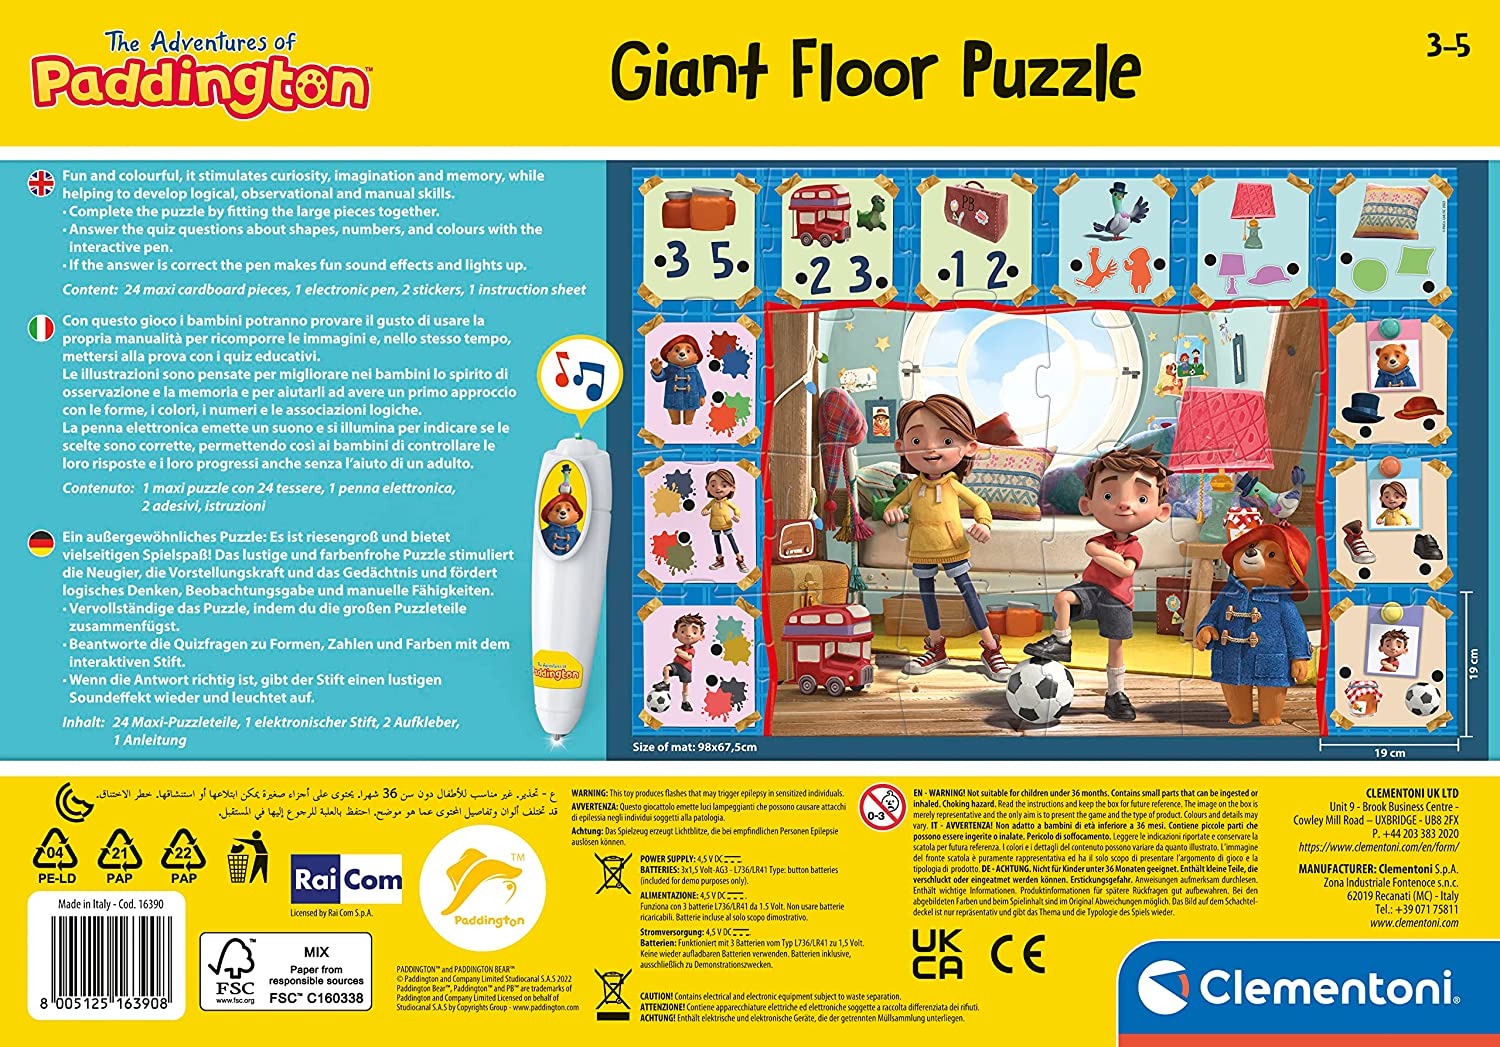 Clementoni The Adventures Of Paddington Interactive Giant Floor Puzzle